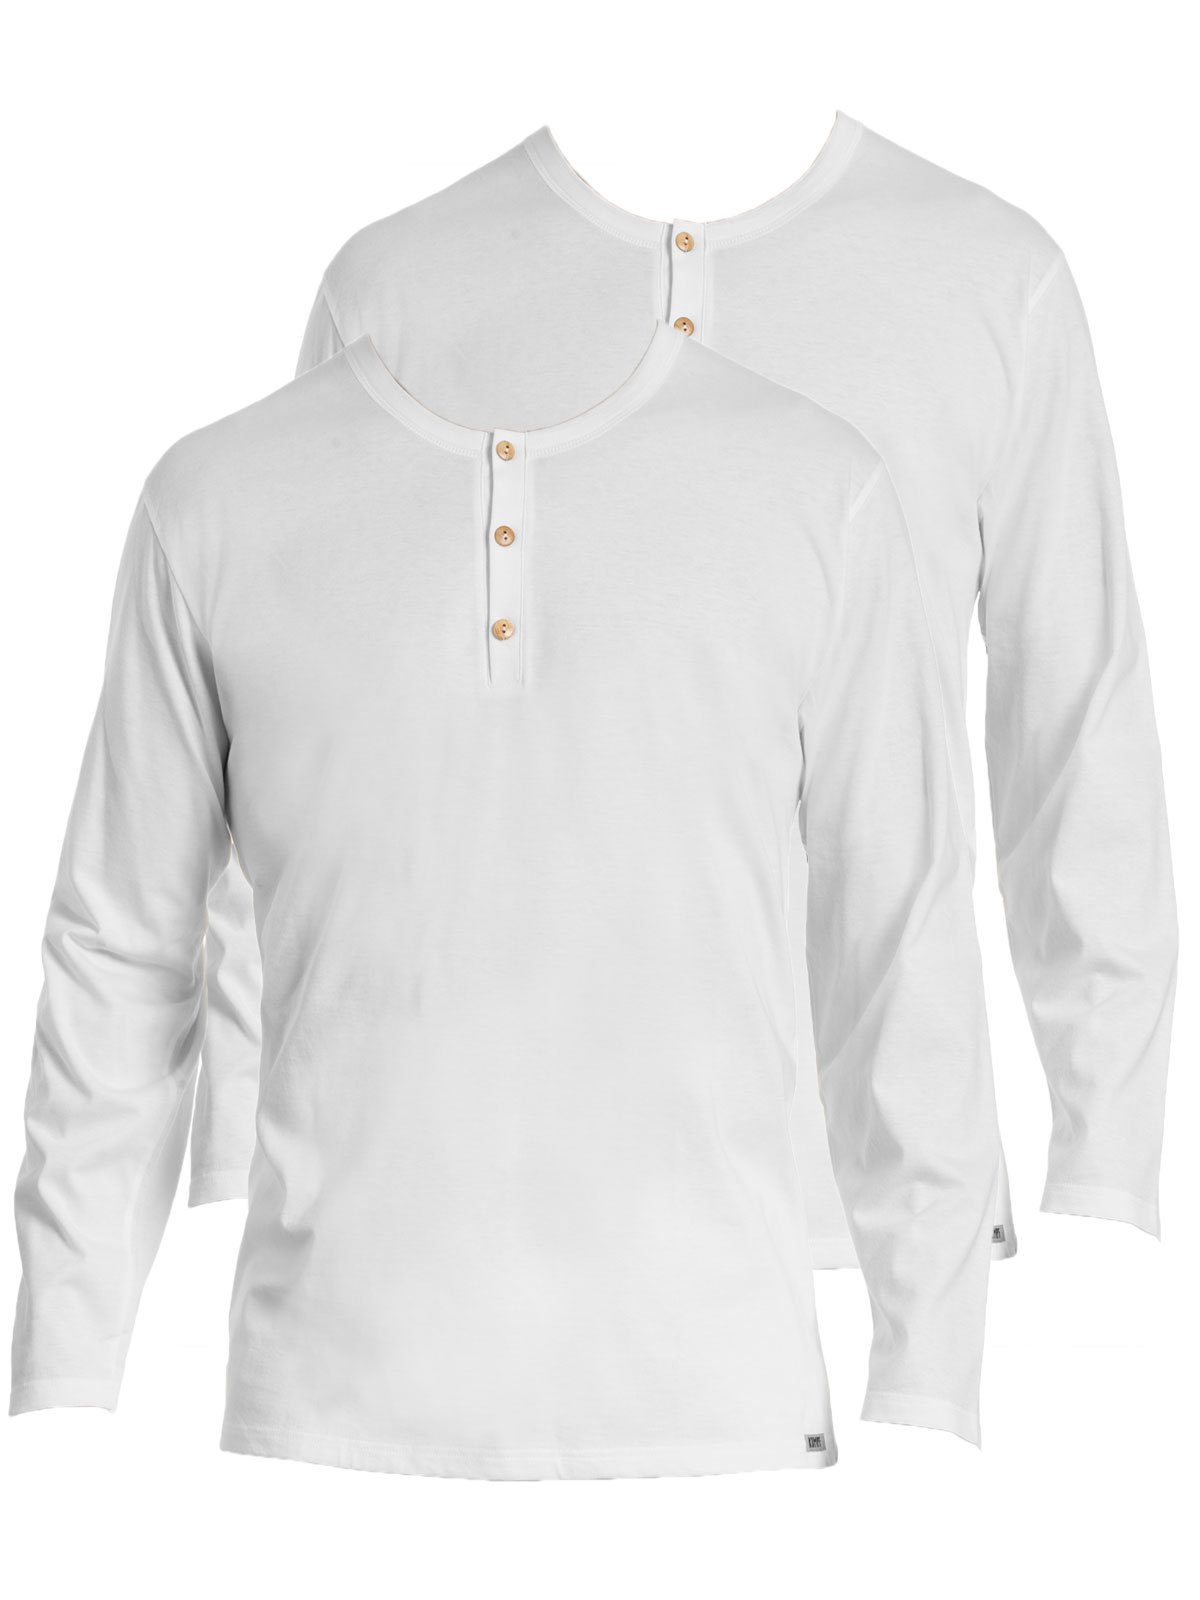 KUMPF Unterziehshirt 2er Sparpack Herren langarm Shirt Bio Cotton (Spar-Set, 2-St) hohe Markenqualität weiss